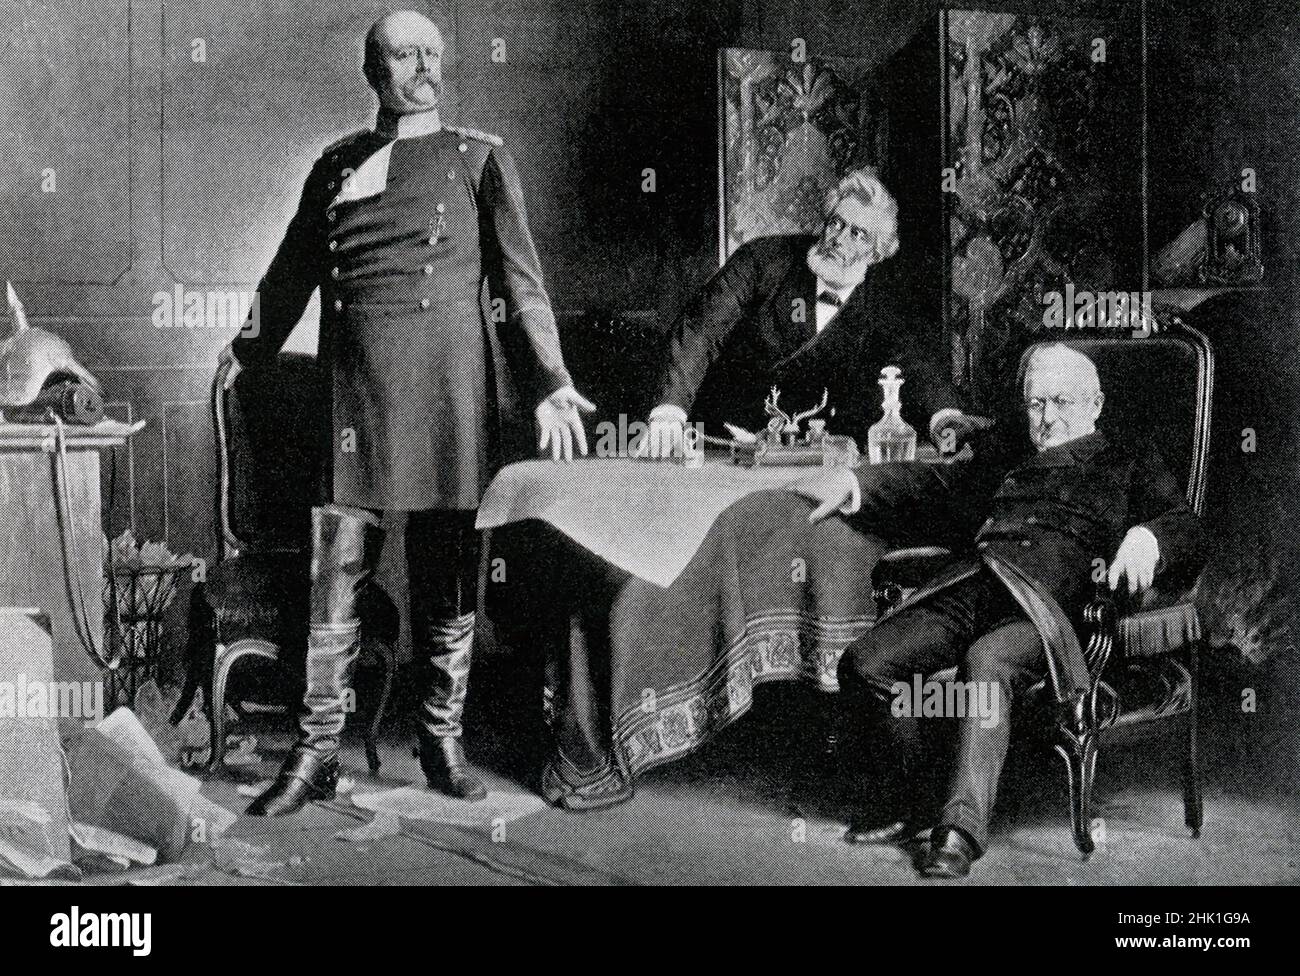 Voici la rencontre à Versailles entre Otto von Bismarck (à gauche) et Adolphe Thiers (assis à droite) au Palais de Versailles France.Bismarck dicte les termes de la paix à Thiers en février 1871.Bismarck avait ordonné à la ville de Paris d'être bombardée de fusils de siège Krupp de grand calibre.Cela a provoqué la capitulation de la ville le 28 janvier 1871.Les discussions sur l'armistice secret ont commencé le 23 janvier 1871 et se sont poursuivies à Versailles.La guerre franco-prussienne ou guerre franco-allemande, souvent appelée en France la guerre de 1870, était un conflit entre le second Empire français et le Banque D'Images